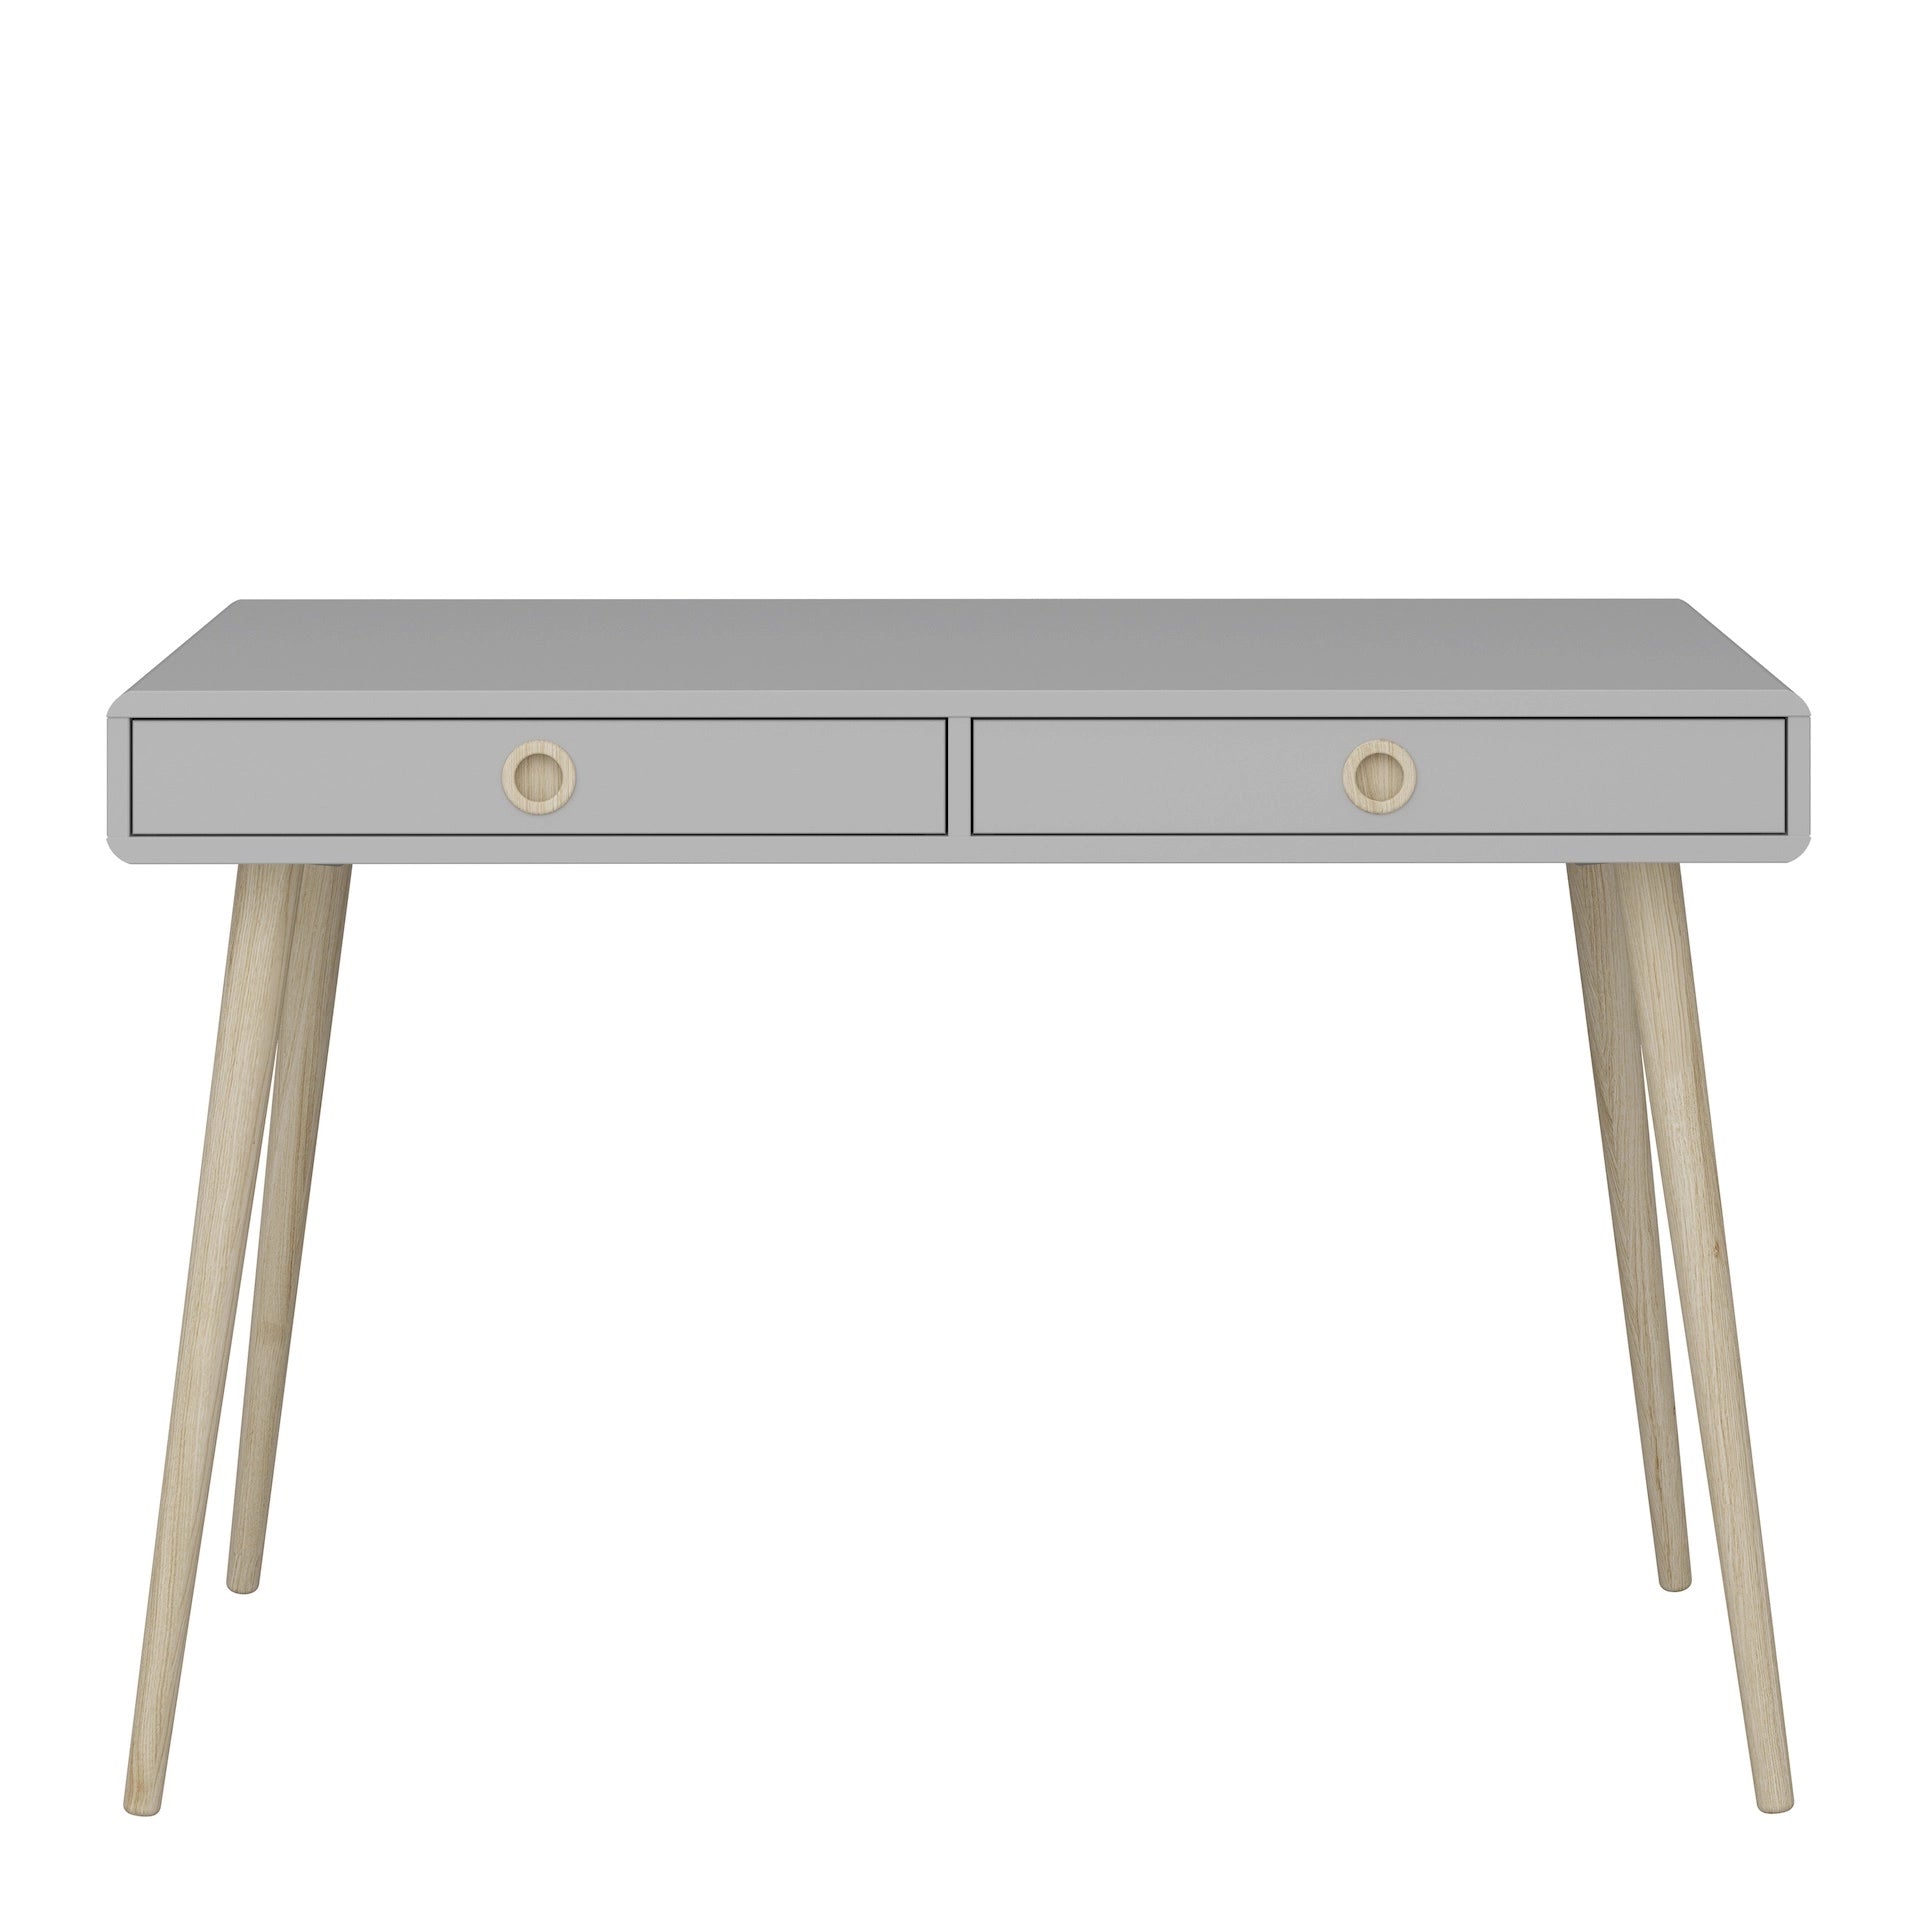 Furniture To Go Softline Standard Desk Grey